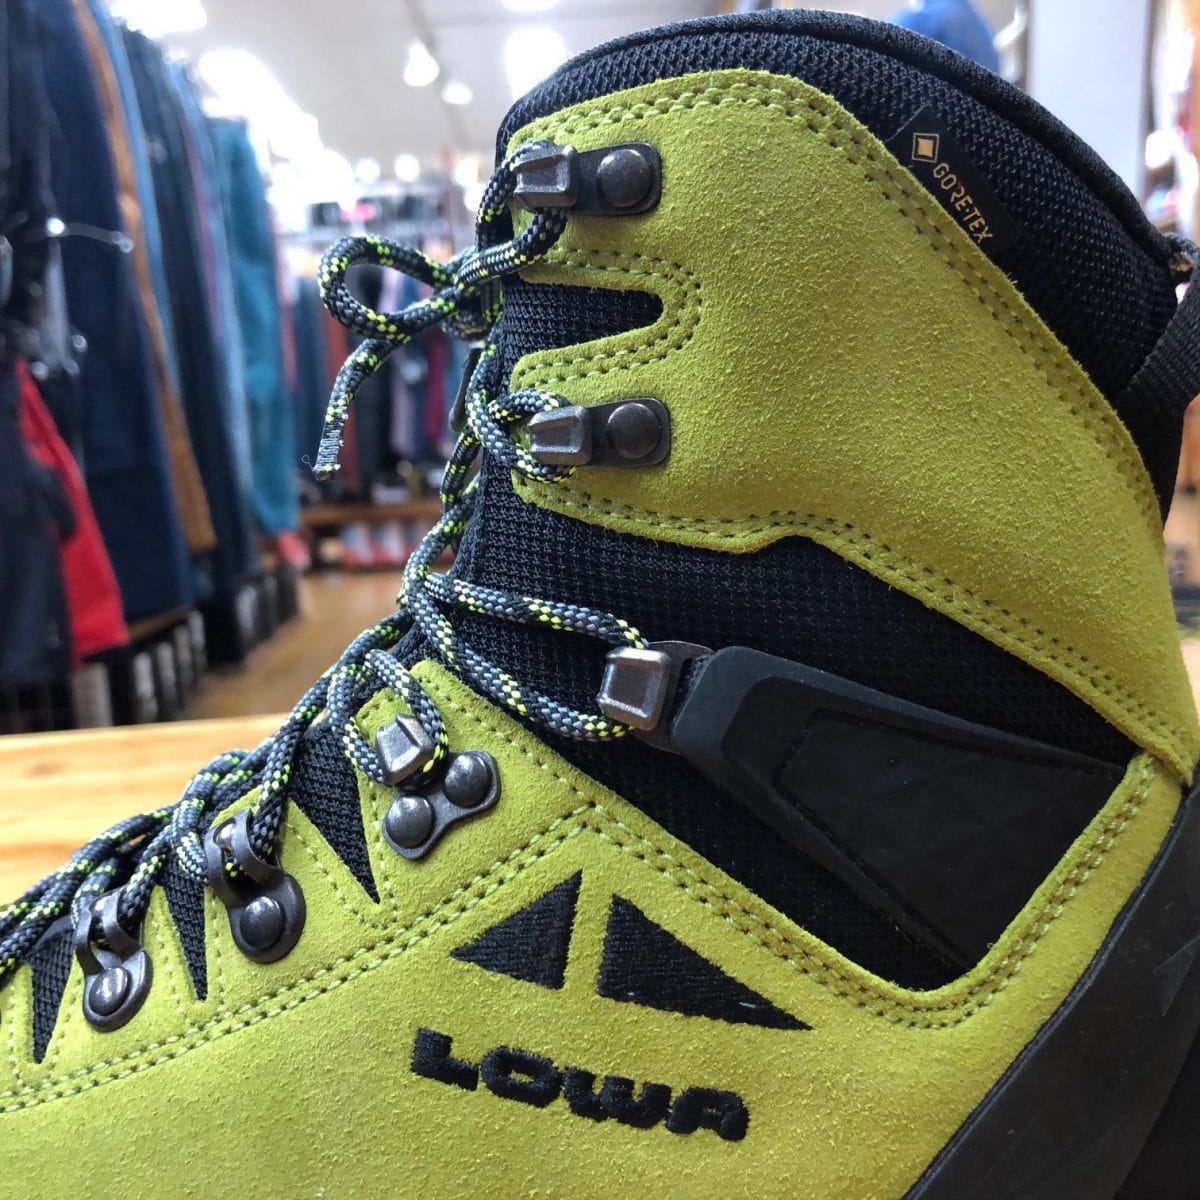 ゴアテックスとプリマロフトを合わせた保温性バツグンの冬山用登山靴